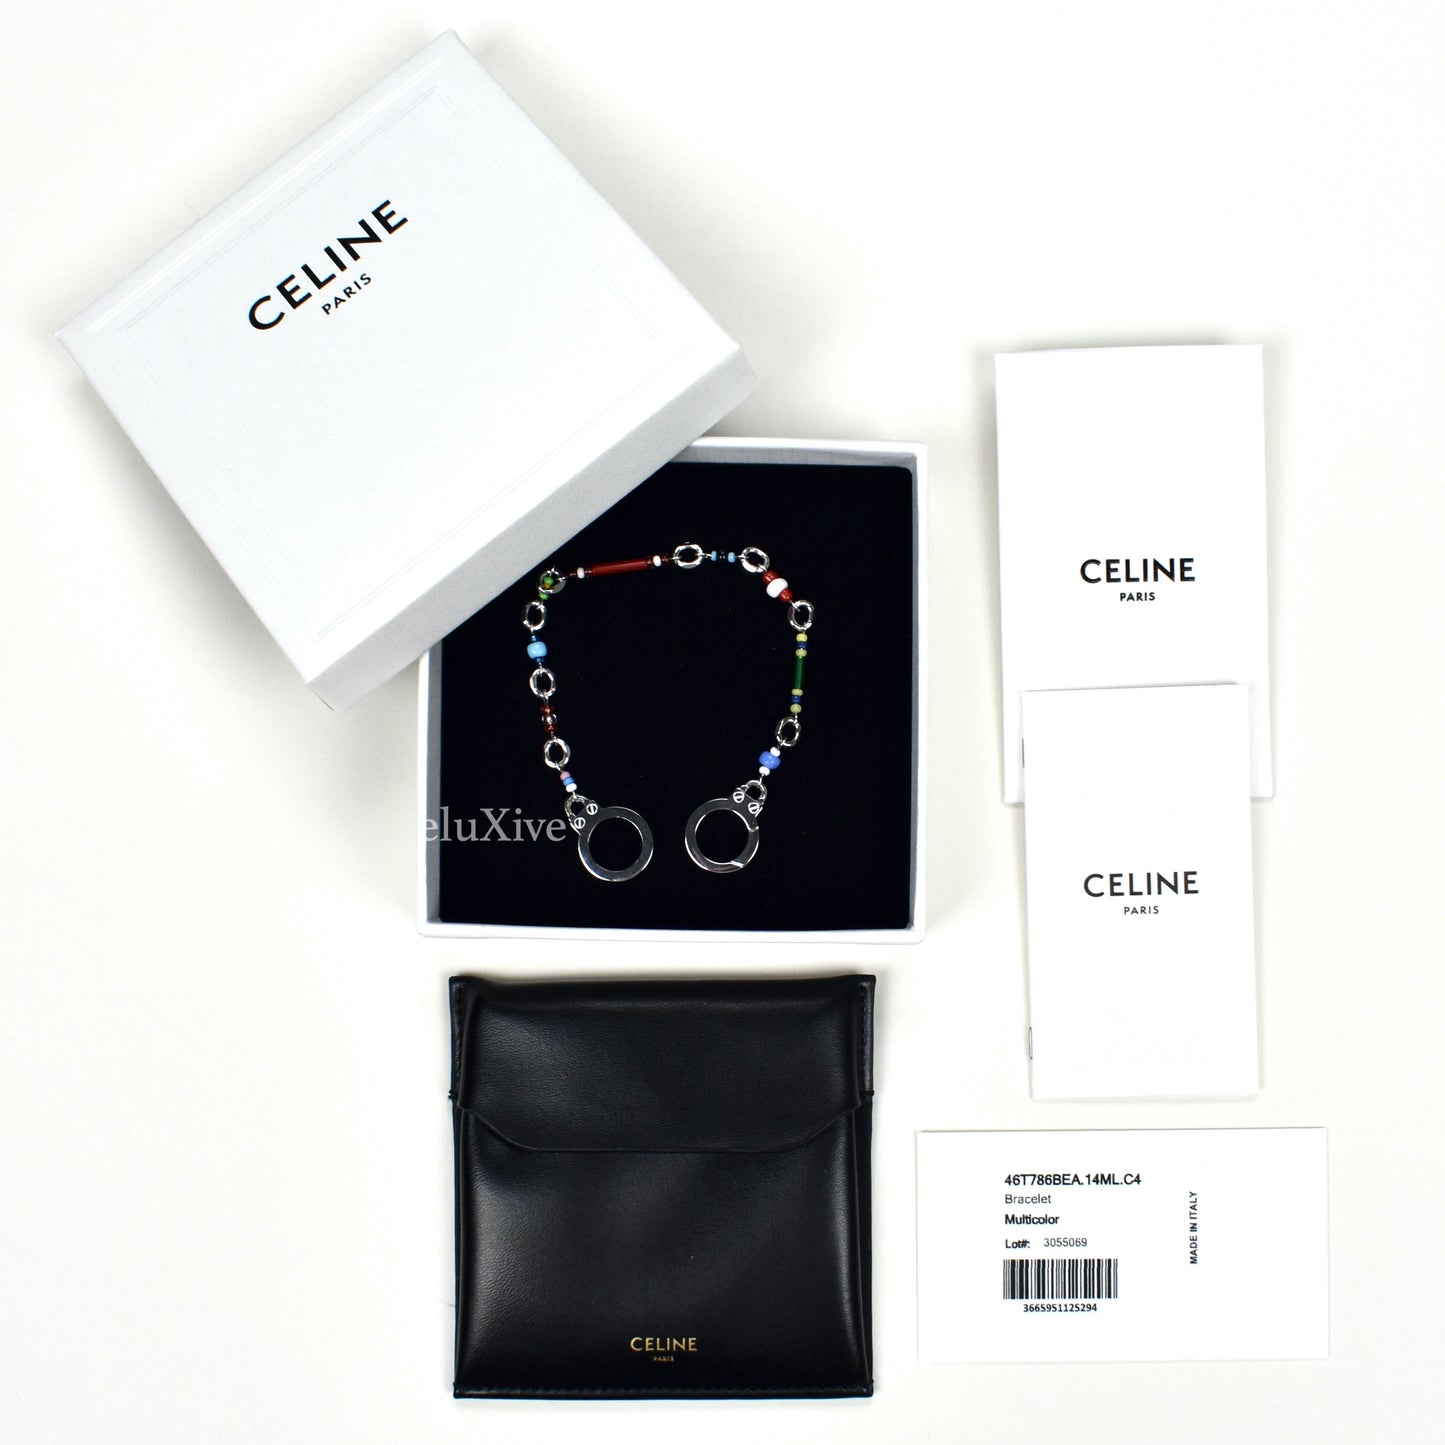 Celine - Beaded Handcuff Clasp Bracelet